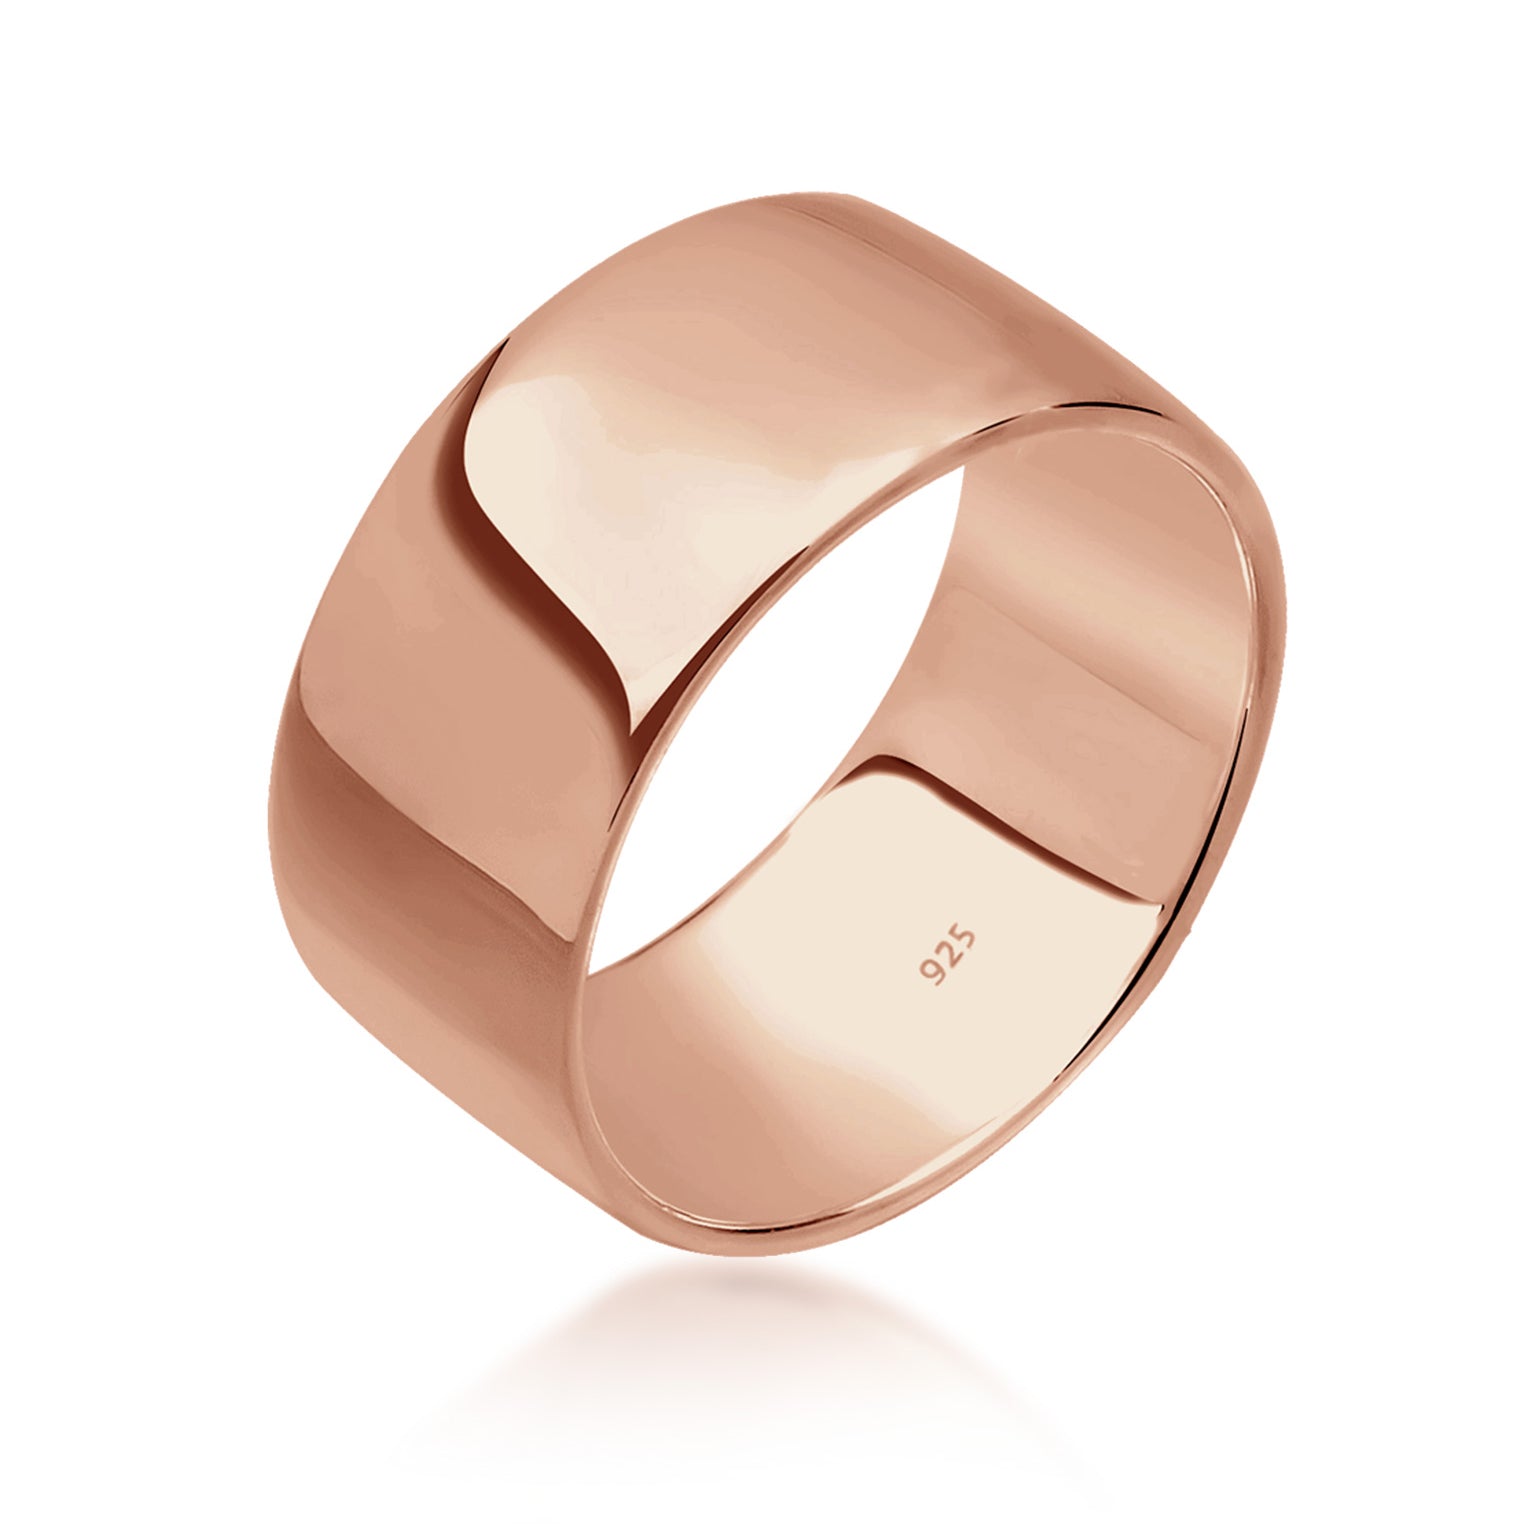 Ringe aus Silber oder Gold Seite Elli | Jewelry – kaufen TOP bei Elli – Auswahl 2 